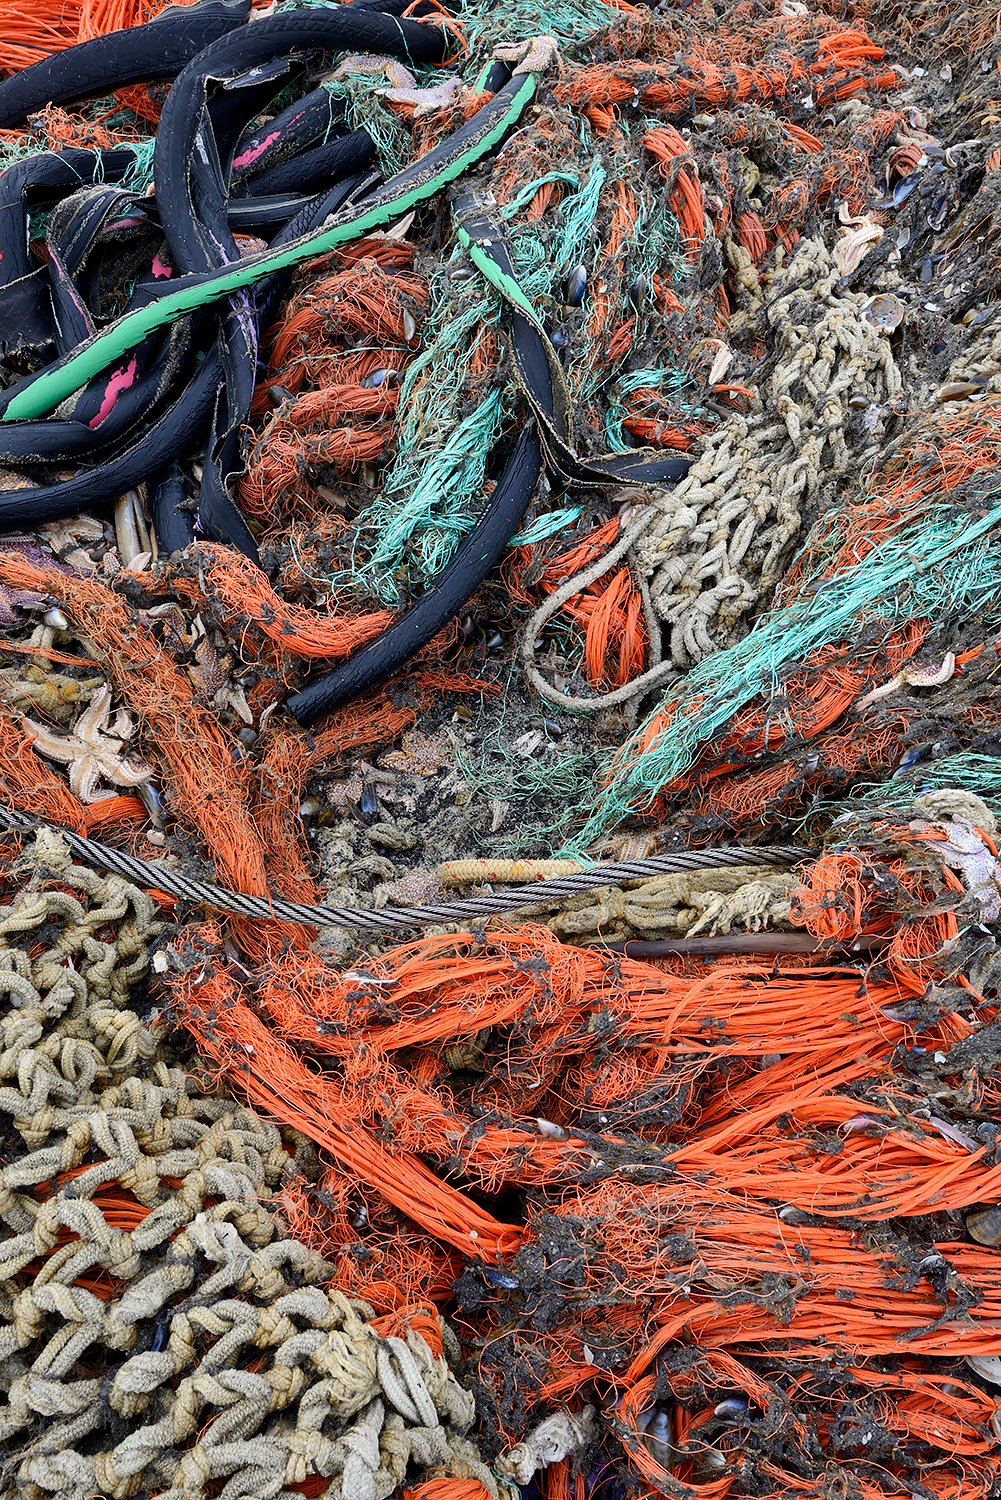 Aangespoeld visnet met zeesterren langs de vloedlijn op het strand van Wijk aan Zee na een winterstorm op de Noordzee.